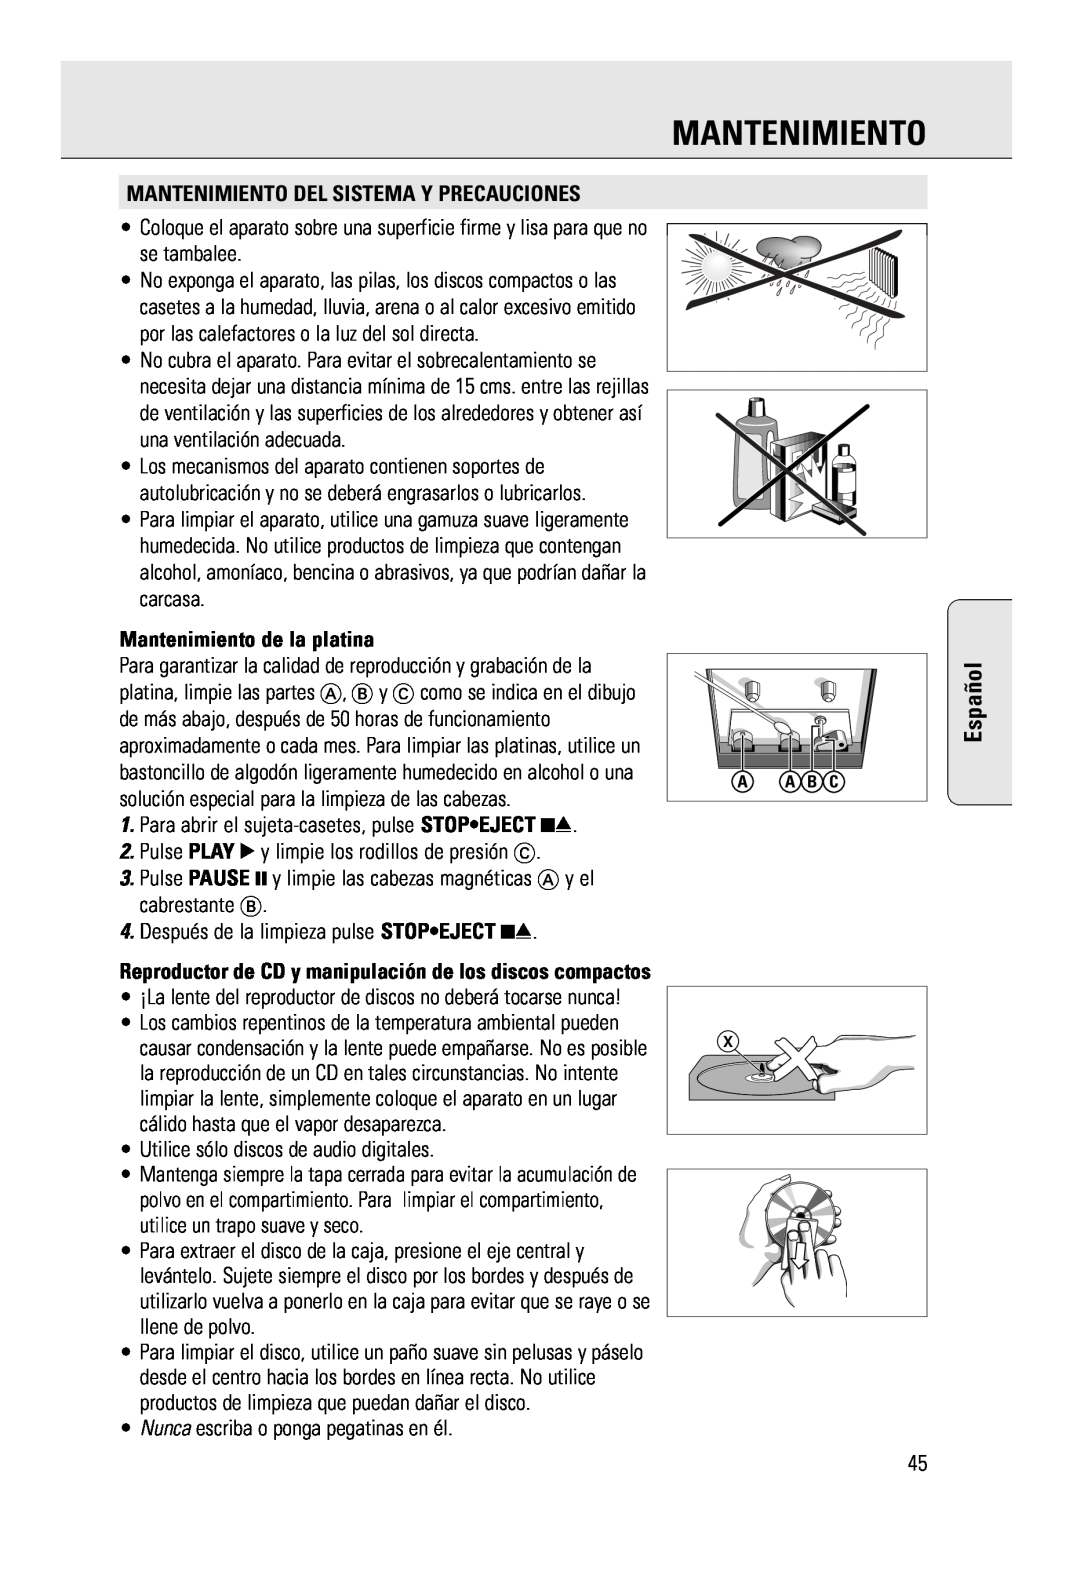 Philips AZ 2785 manual Español, Mantenimiento Del Sistema Y Precauciones, Mantenimiento de la platina 